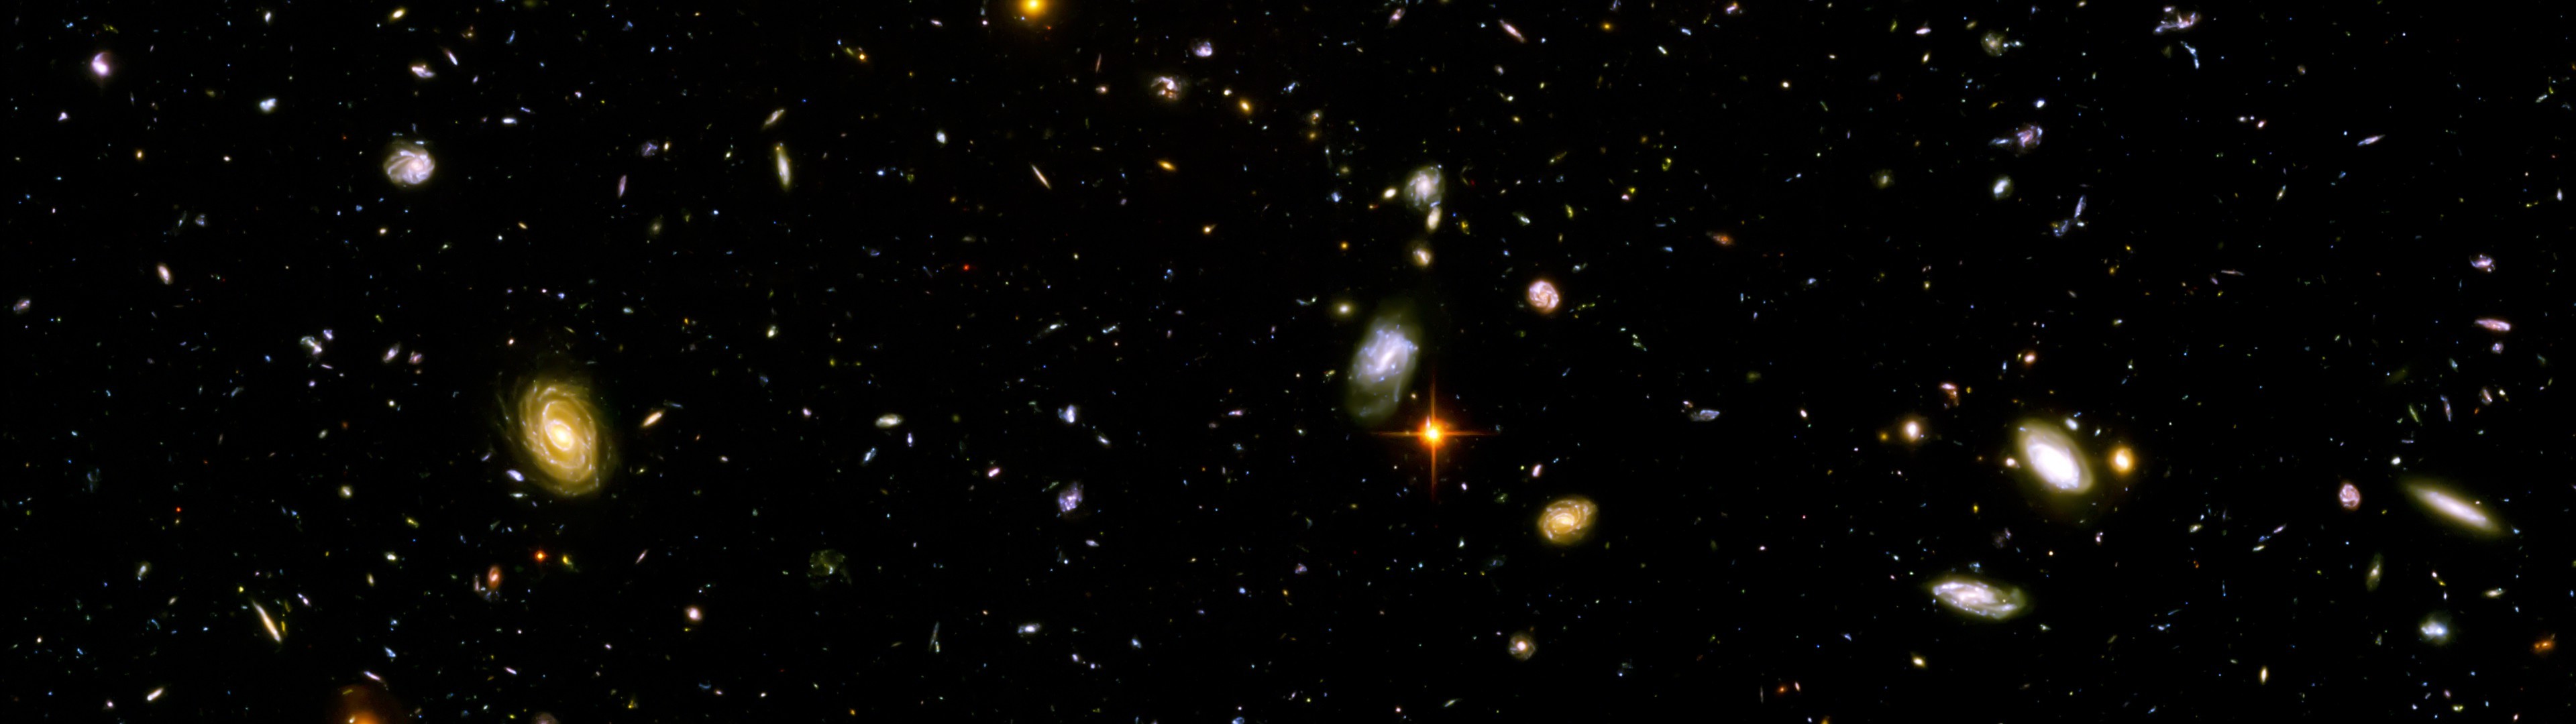 space, Galaxy, Hubble Deep Field Wallpaper